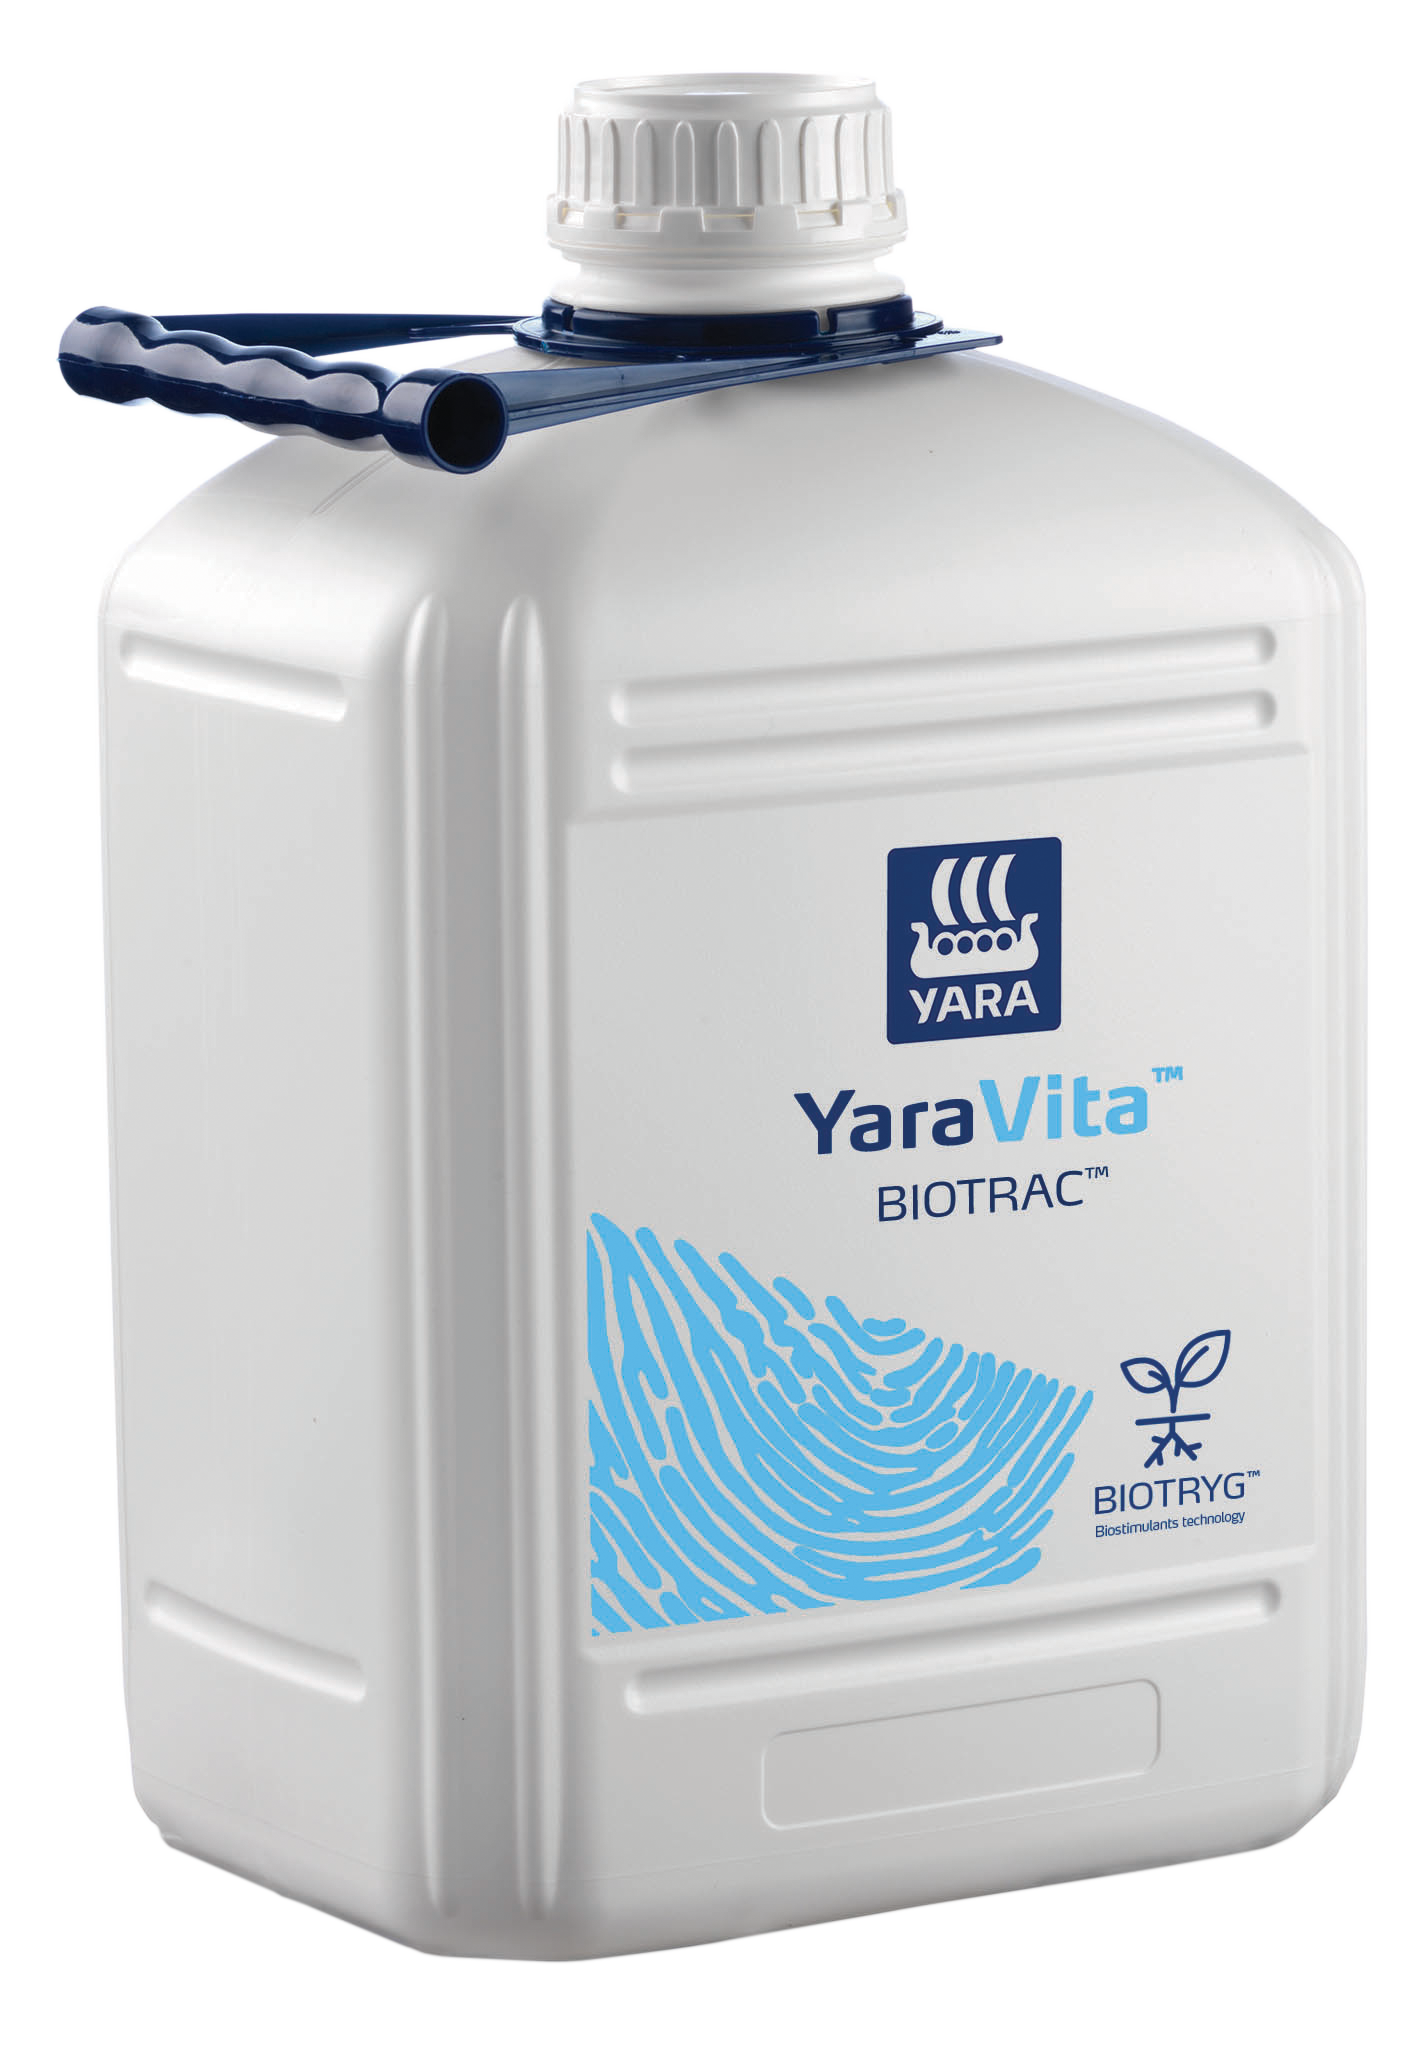 YaraVita Biotrac 200 L - 280 L